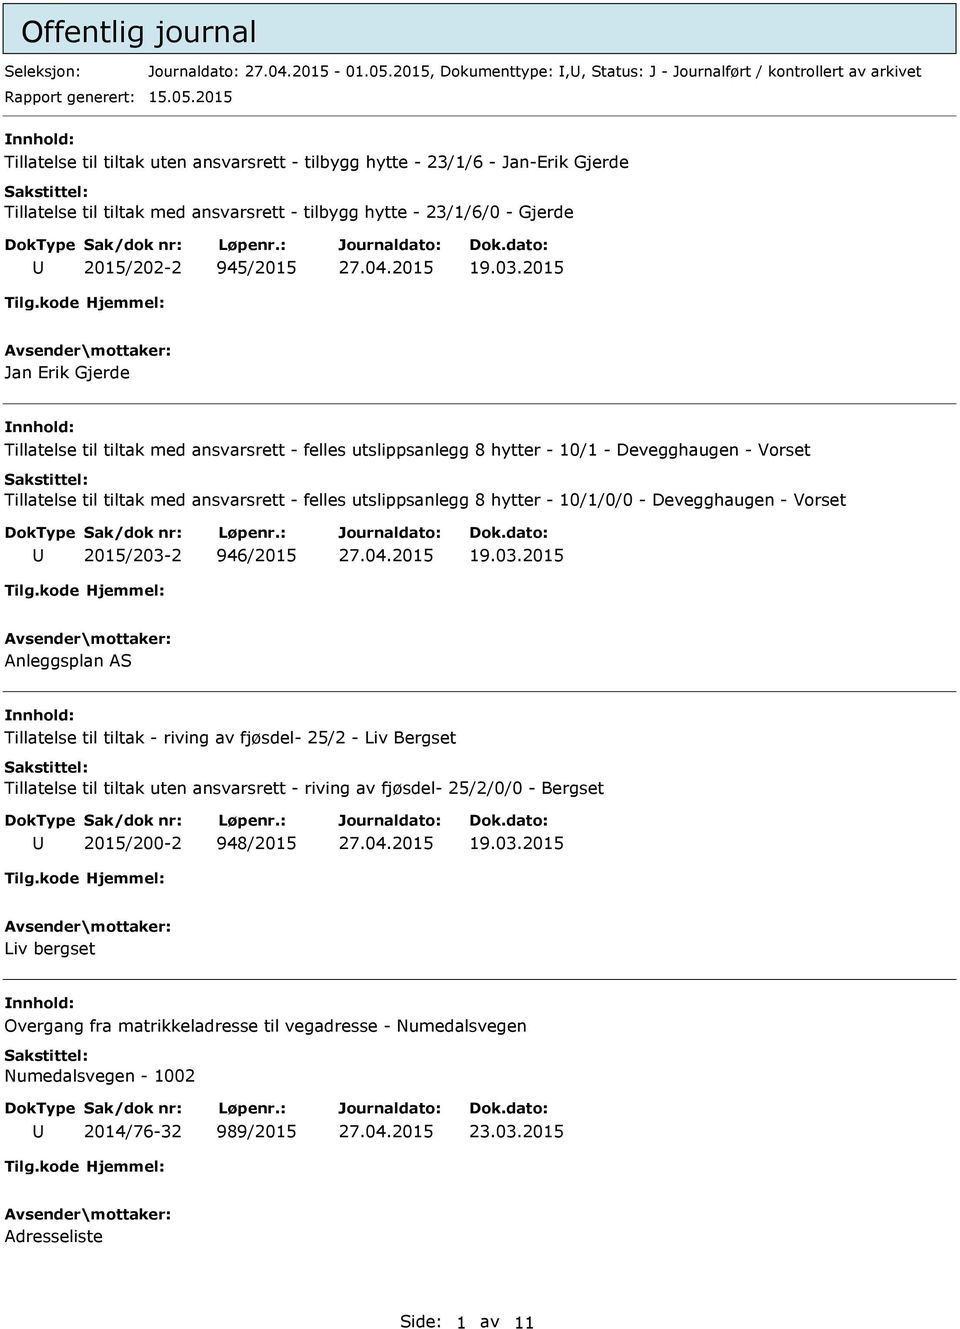 2015 nnhold: Tillatelse til tiltak uten ansvarsrett - tilbygg hytte - 23/1/6 - Jan-Erik Gjerde Tillatelse til tiltak med ansvarsrett - tilbygg hytte - 23/1/6/0 - Gjerde 2015/202-2 945/2015 19.03.